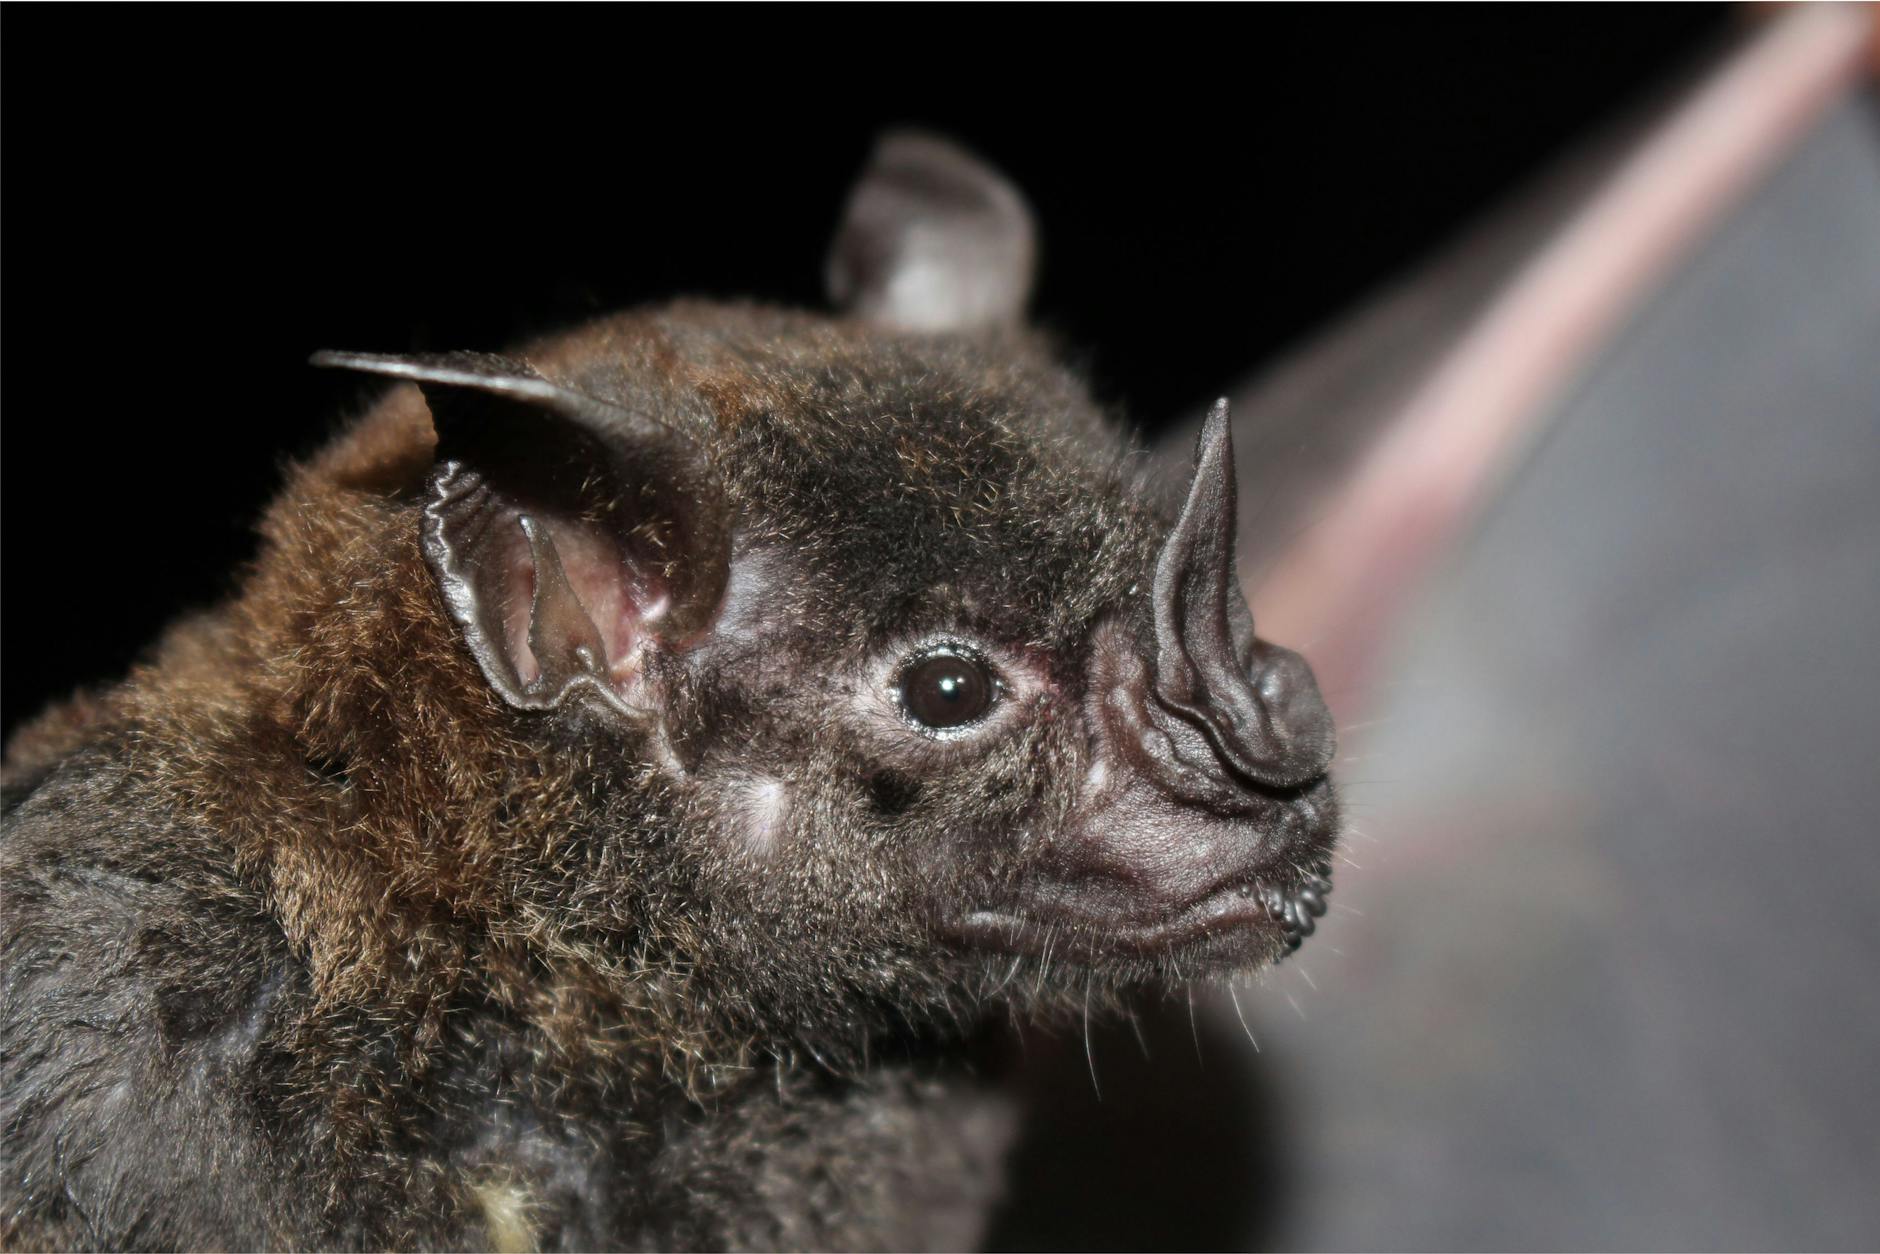 a close up shot of a murcielago bat